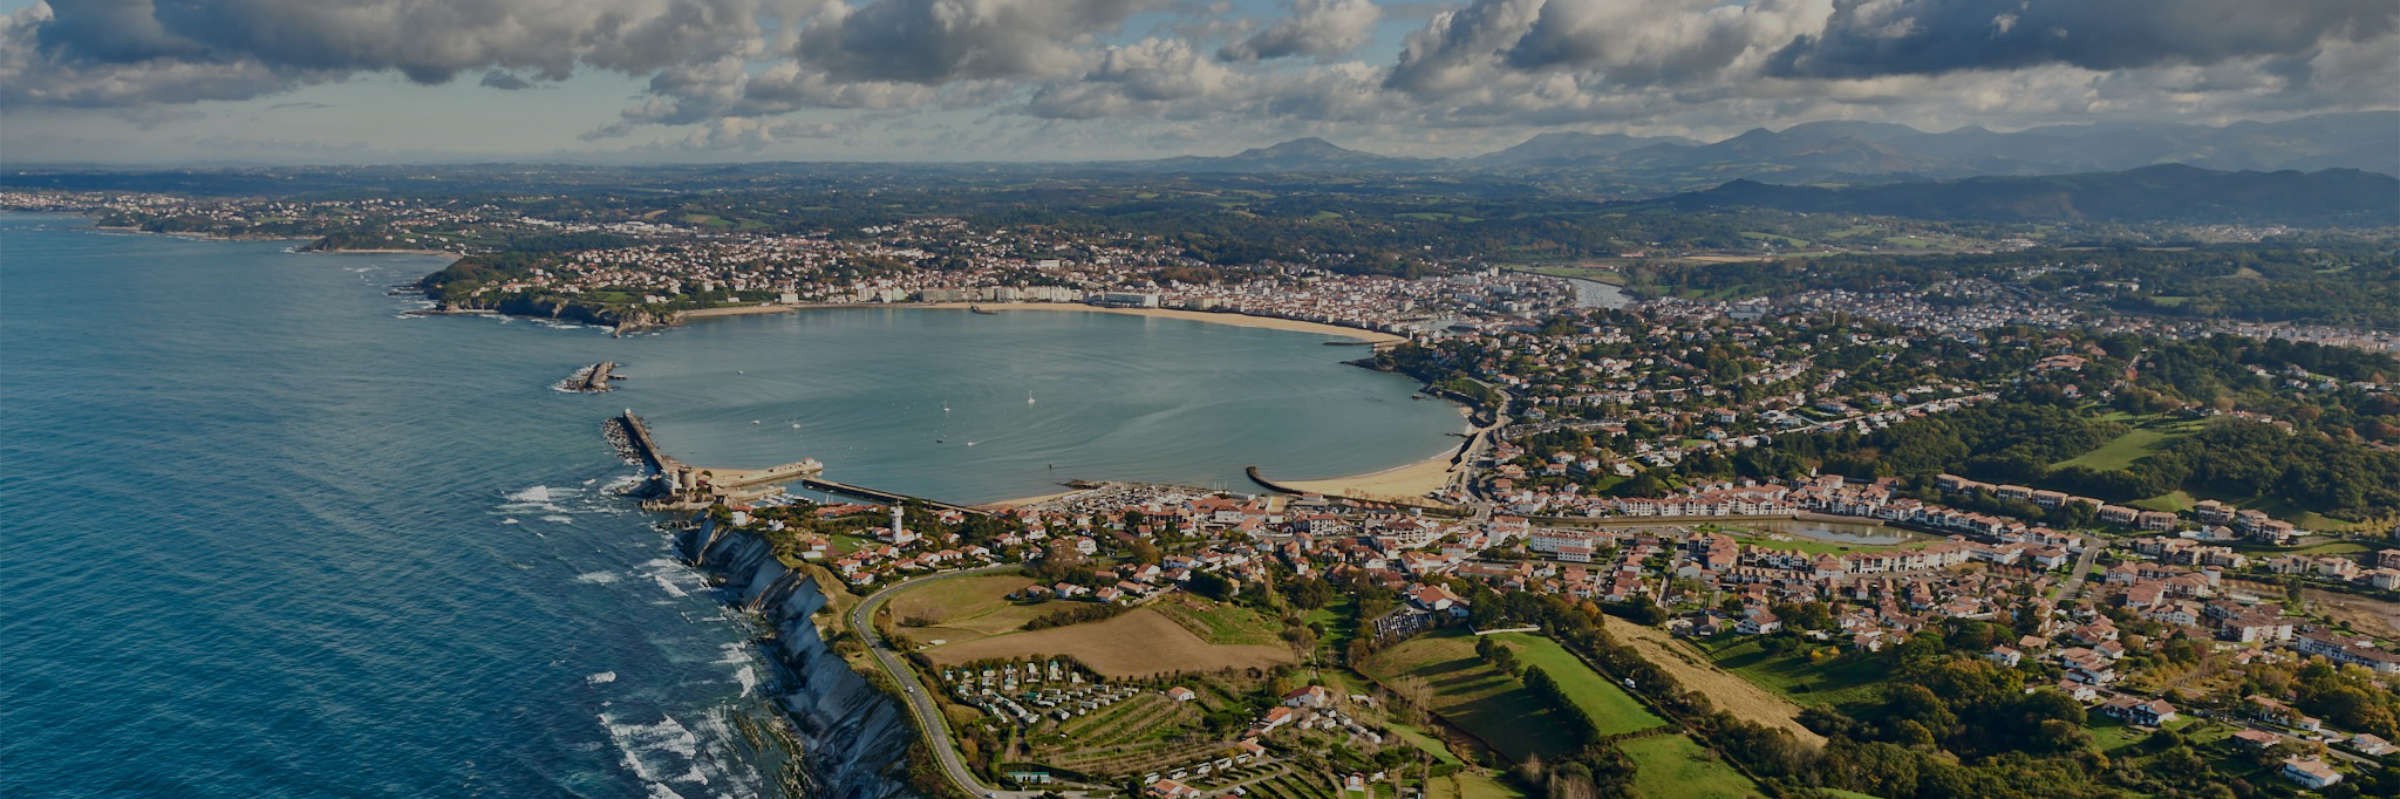 Circuits touristiques Hélicoptère au Pays Basque